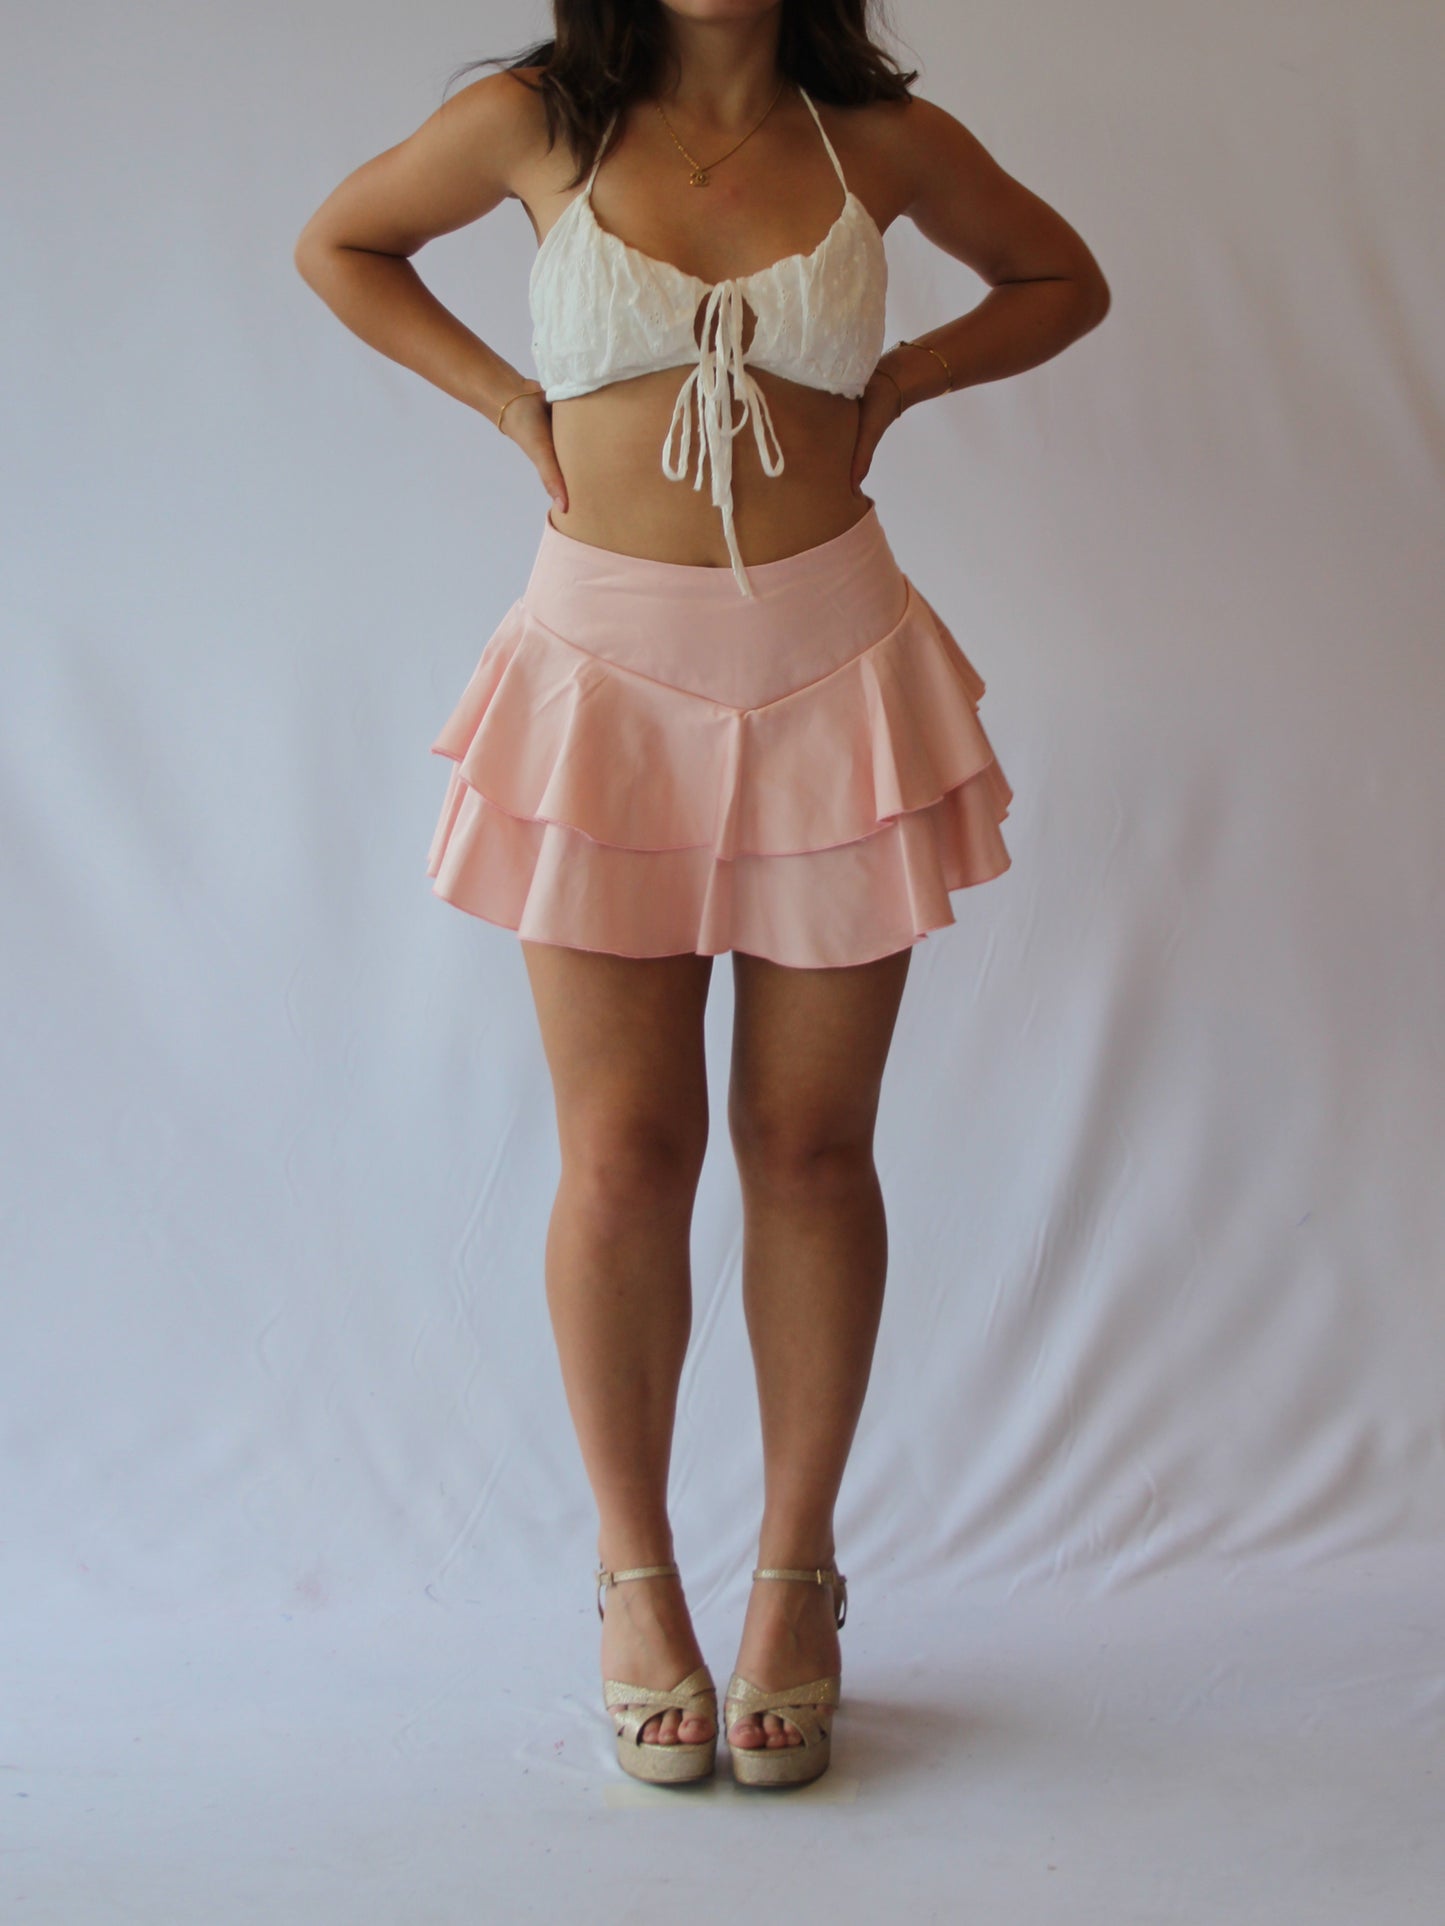 Charlotte strapless (skirt sold separately)